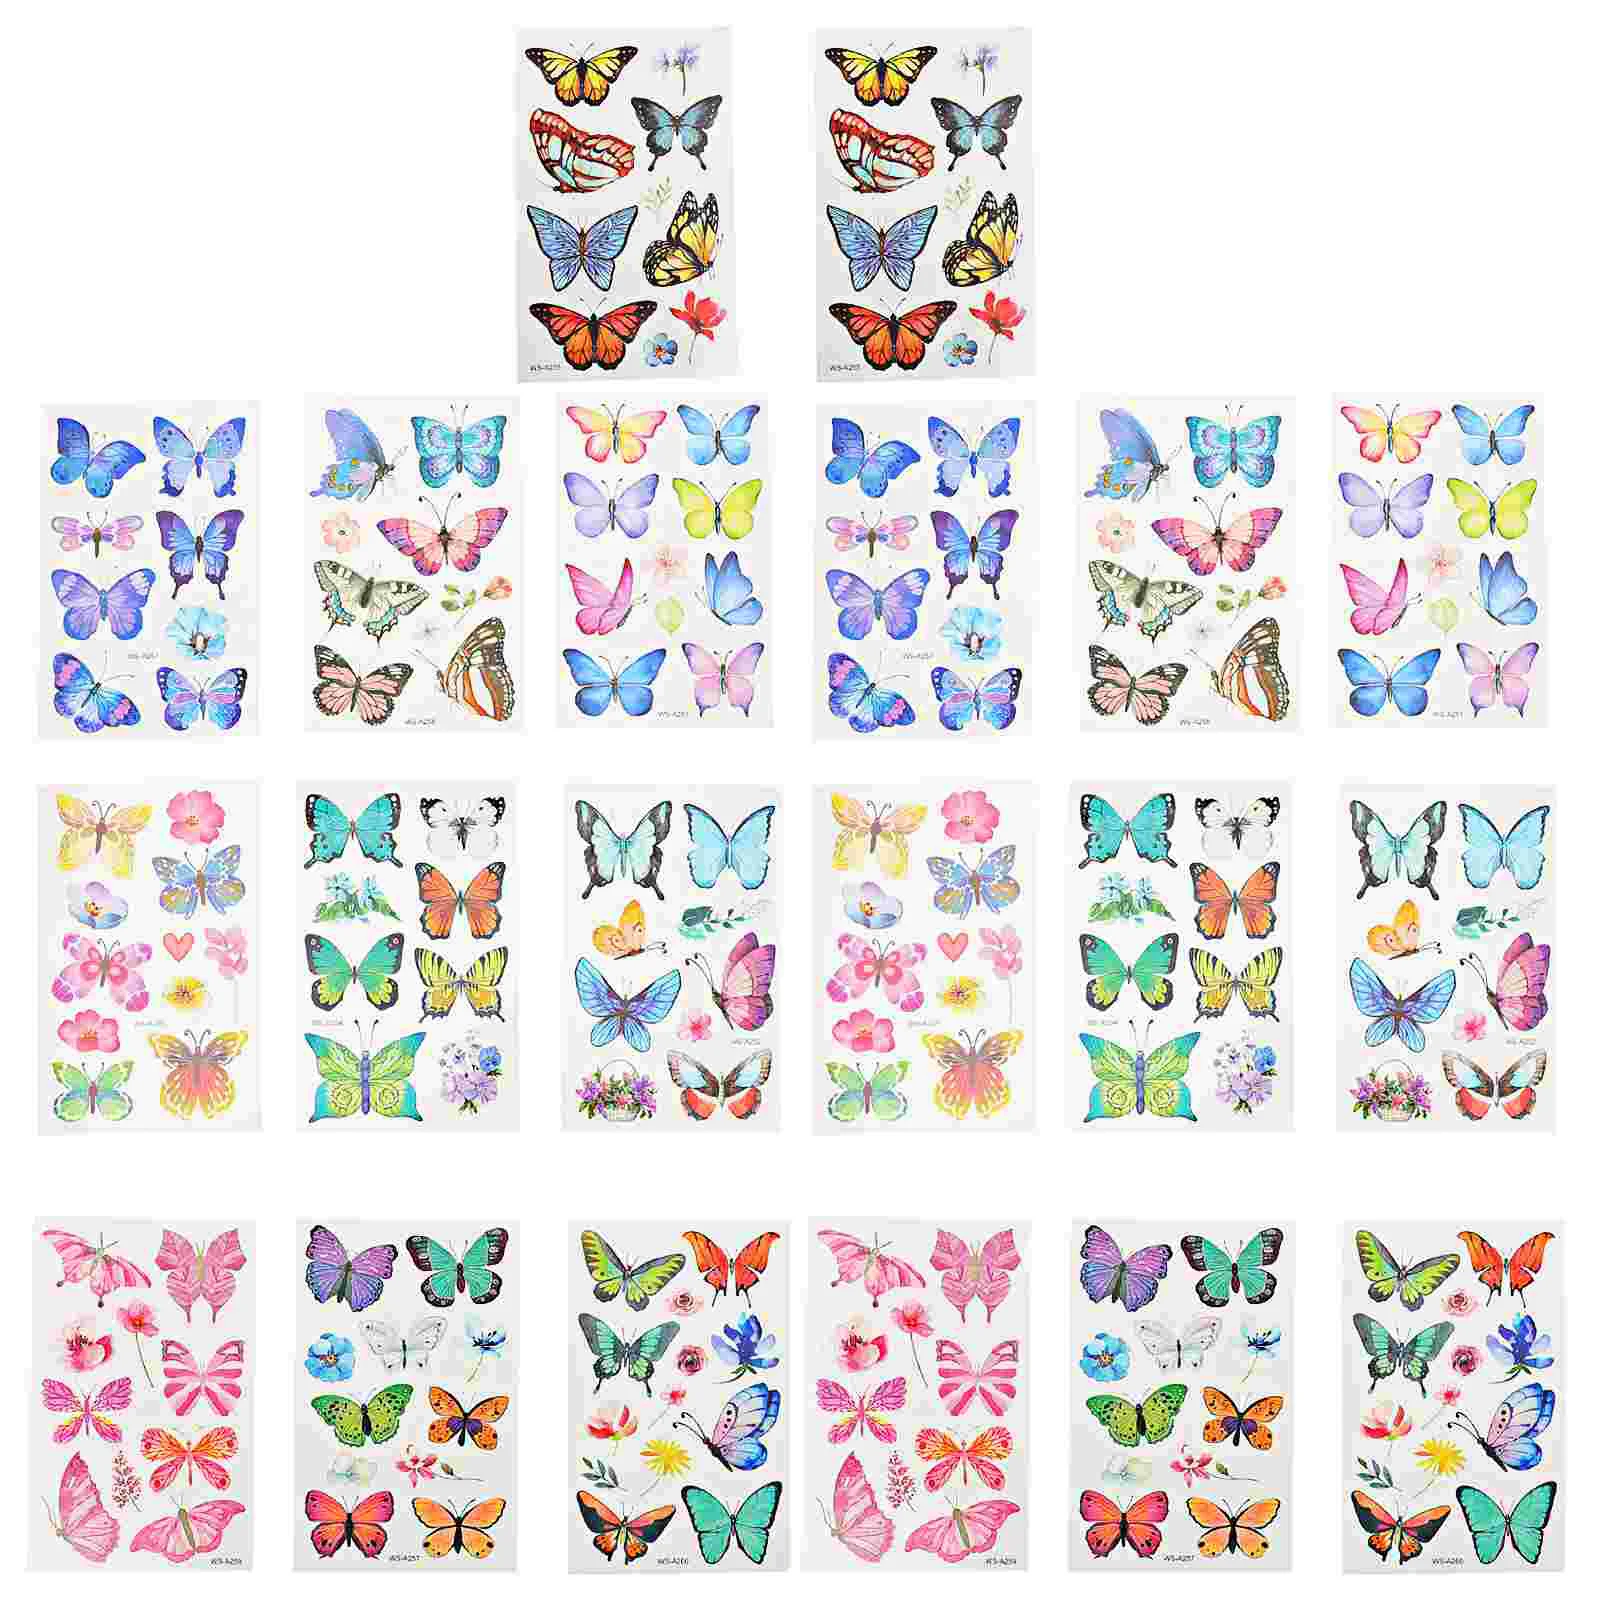 

20 Sheets Transfer Butterflies Temporary Tattoos Sticker Butterflies Party Favor